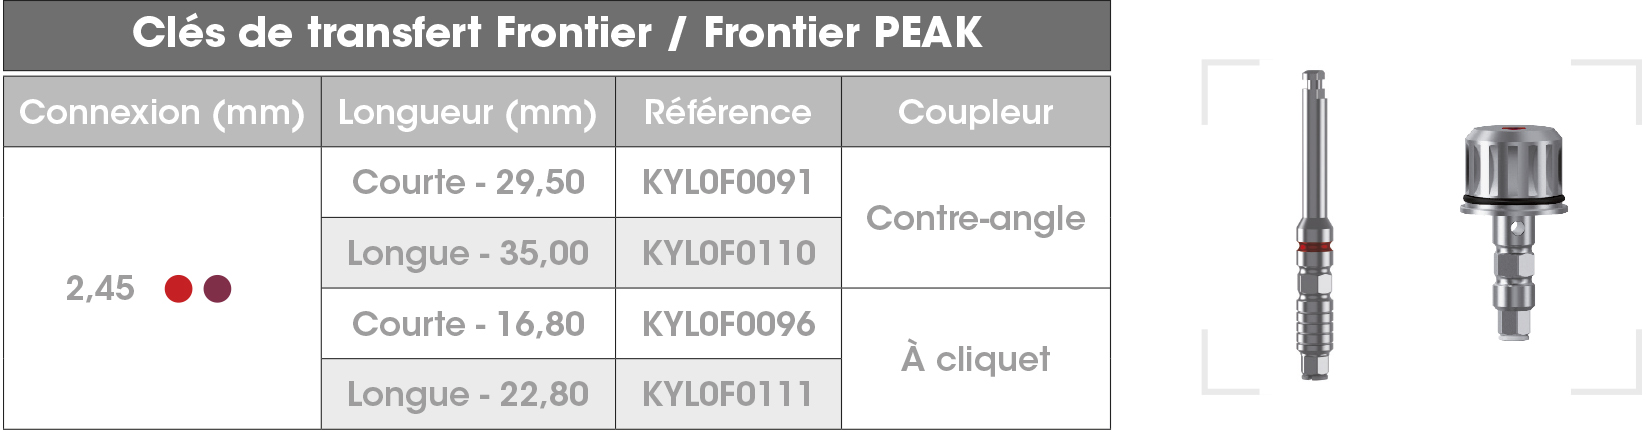 Cle transfert Frontier FR